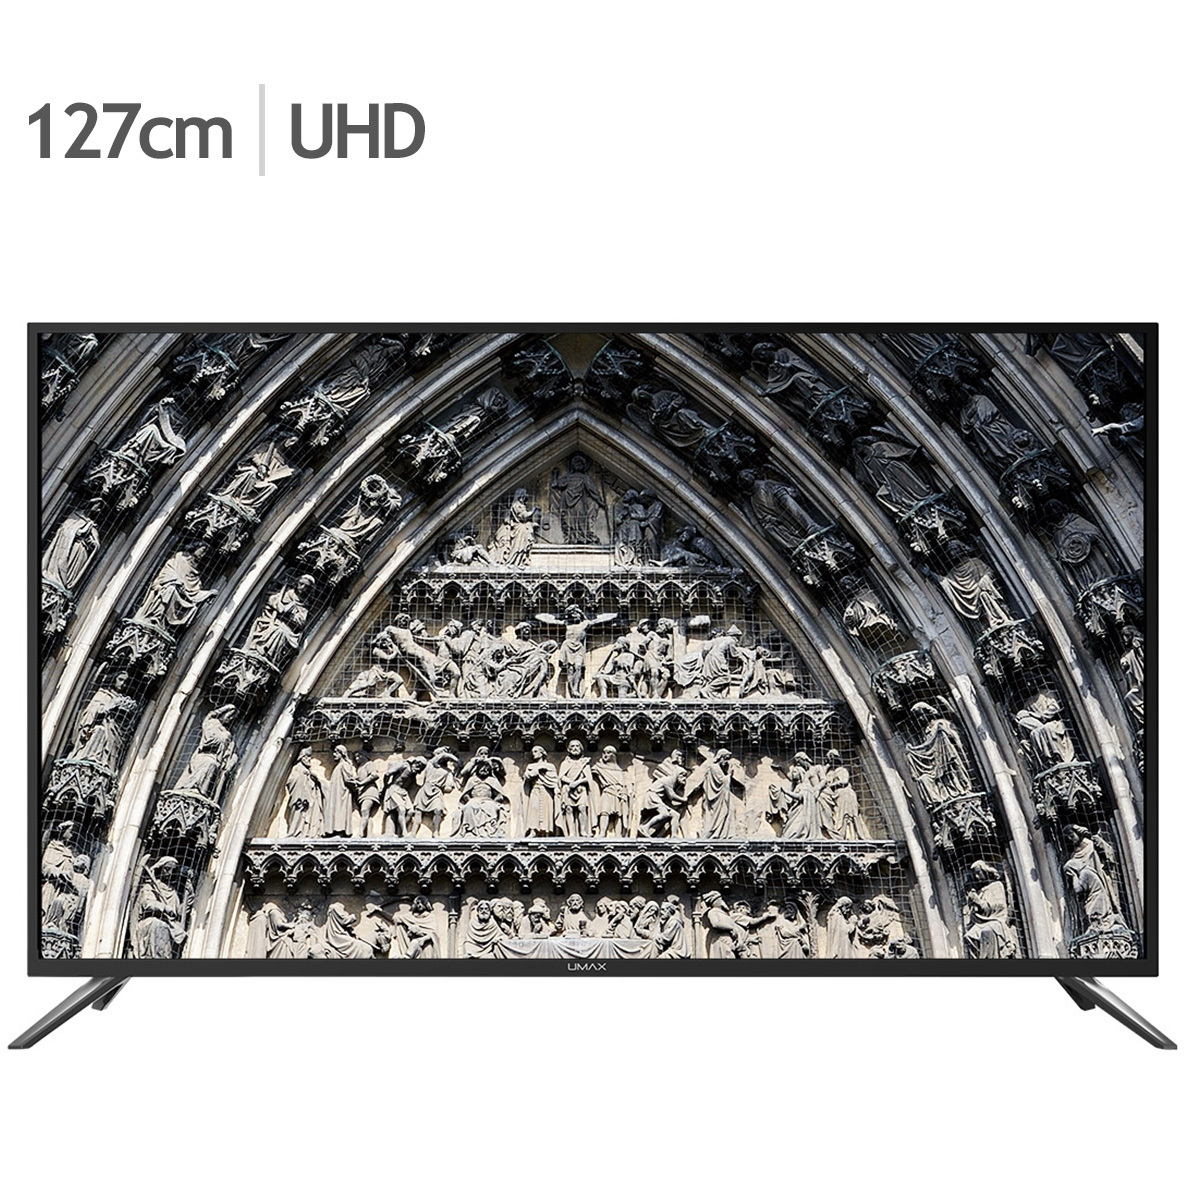 유맥스 UHD TV UHD50L 127cm (50)